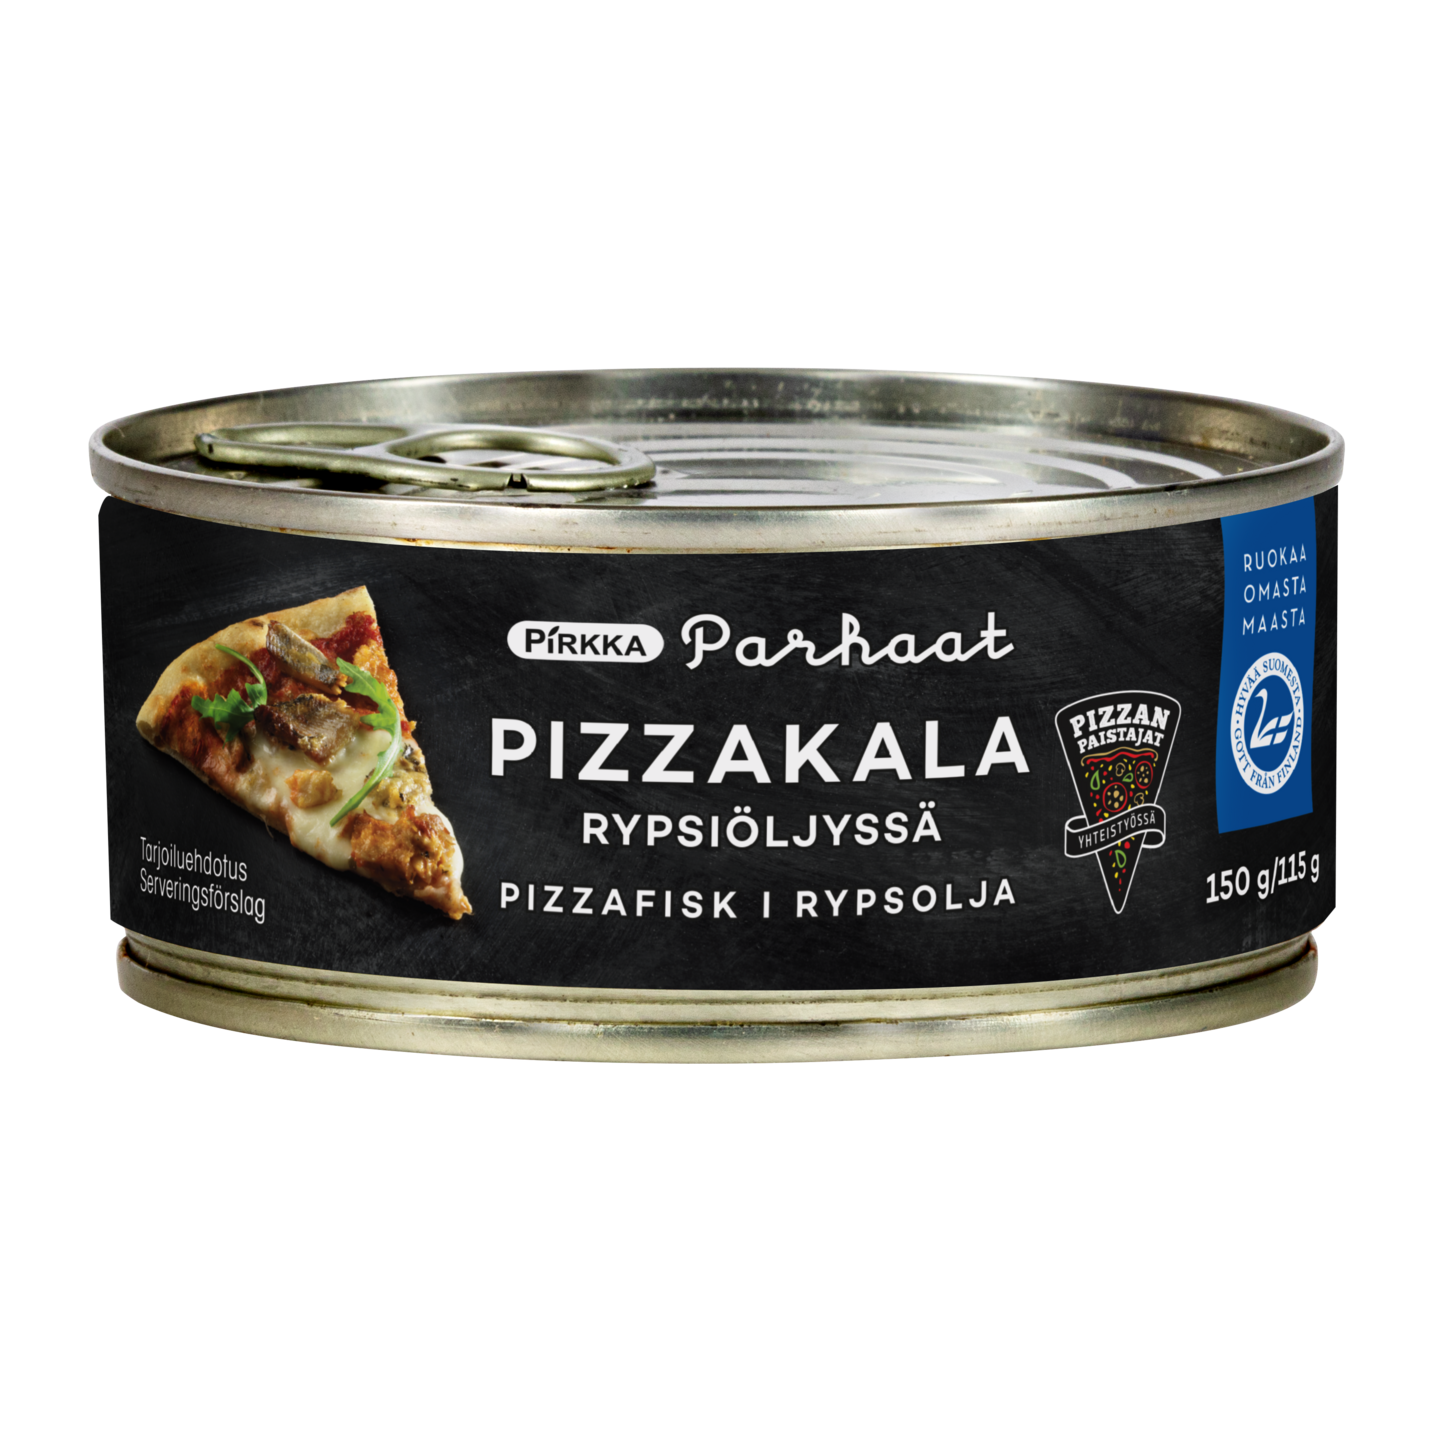 Pirkka Parhaat pizzakala rypsiöljyssä 150g/115g Pizzanpaistajat | K-Ruoka  Verkkokauppa